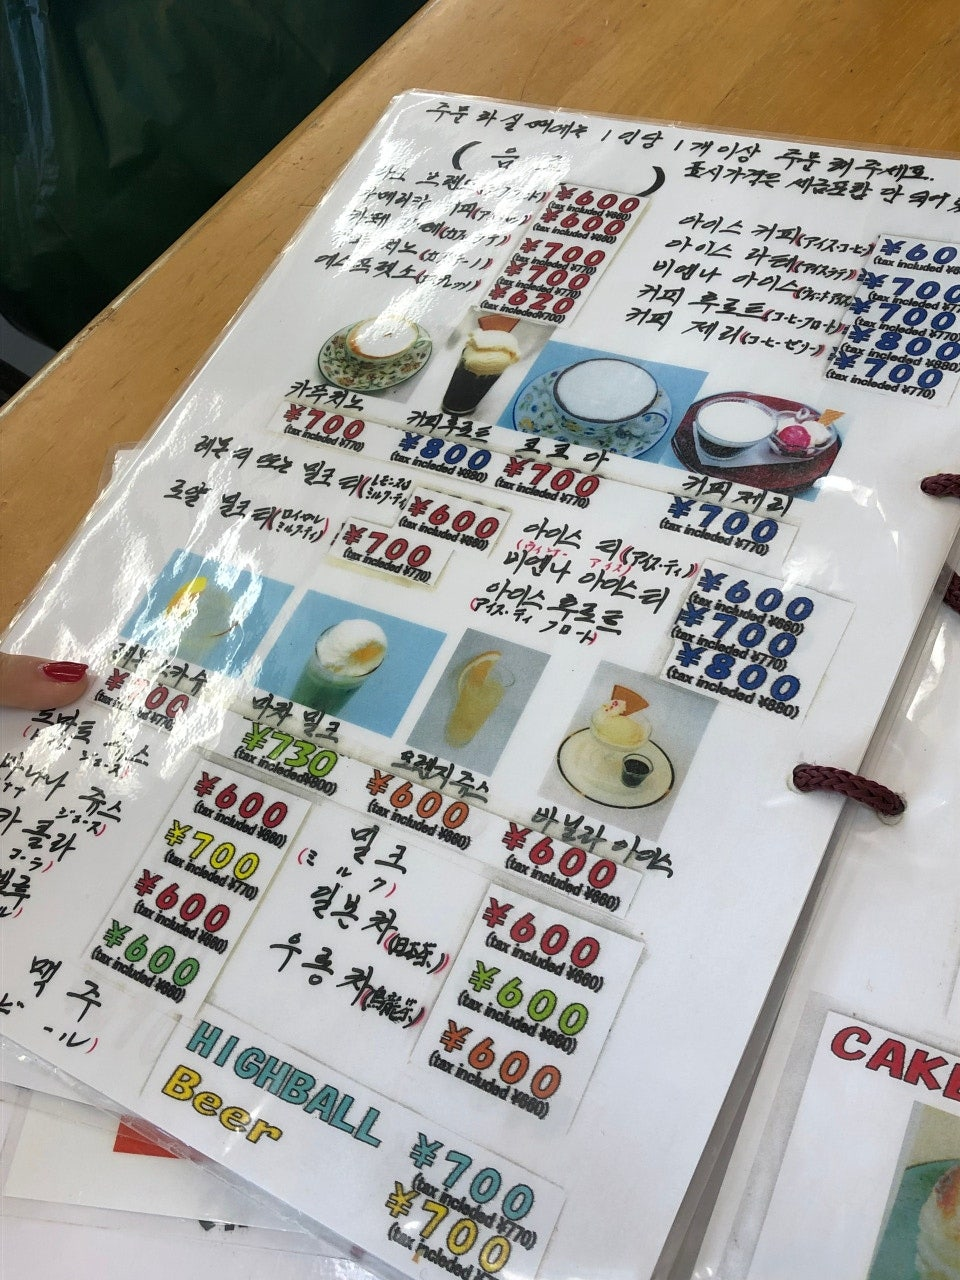 한국어 메뉴판이 손글씨로 쓰여있다